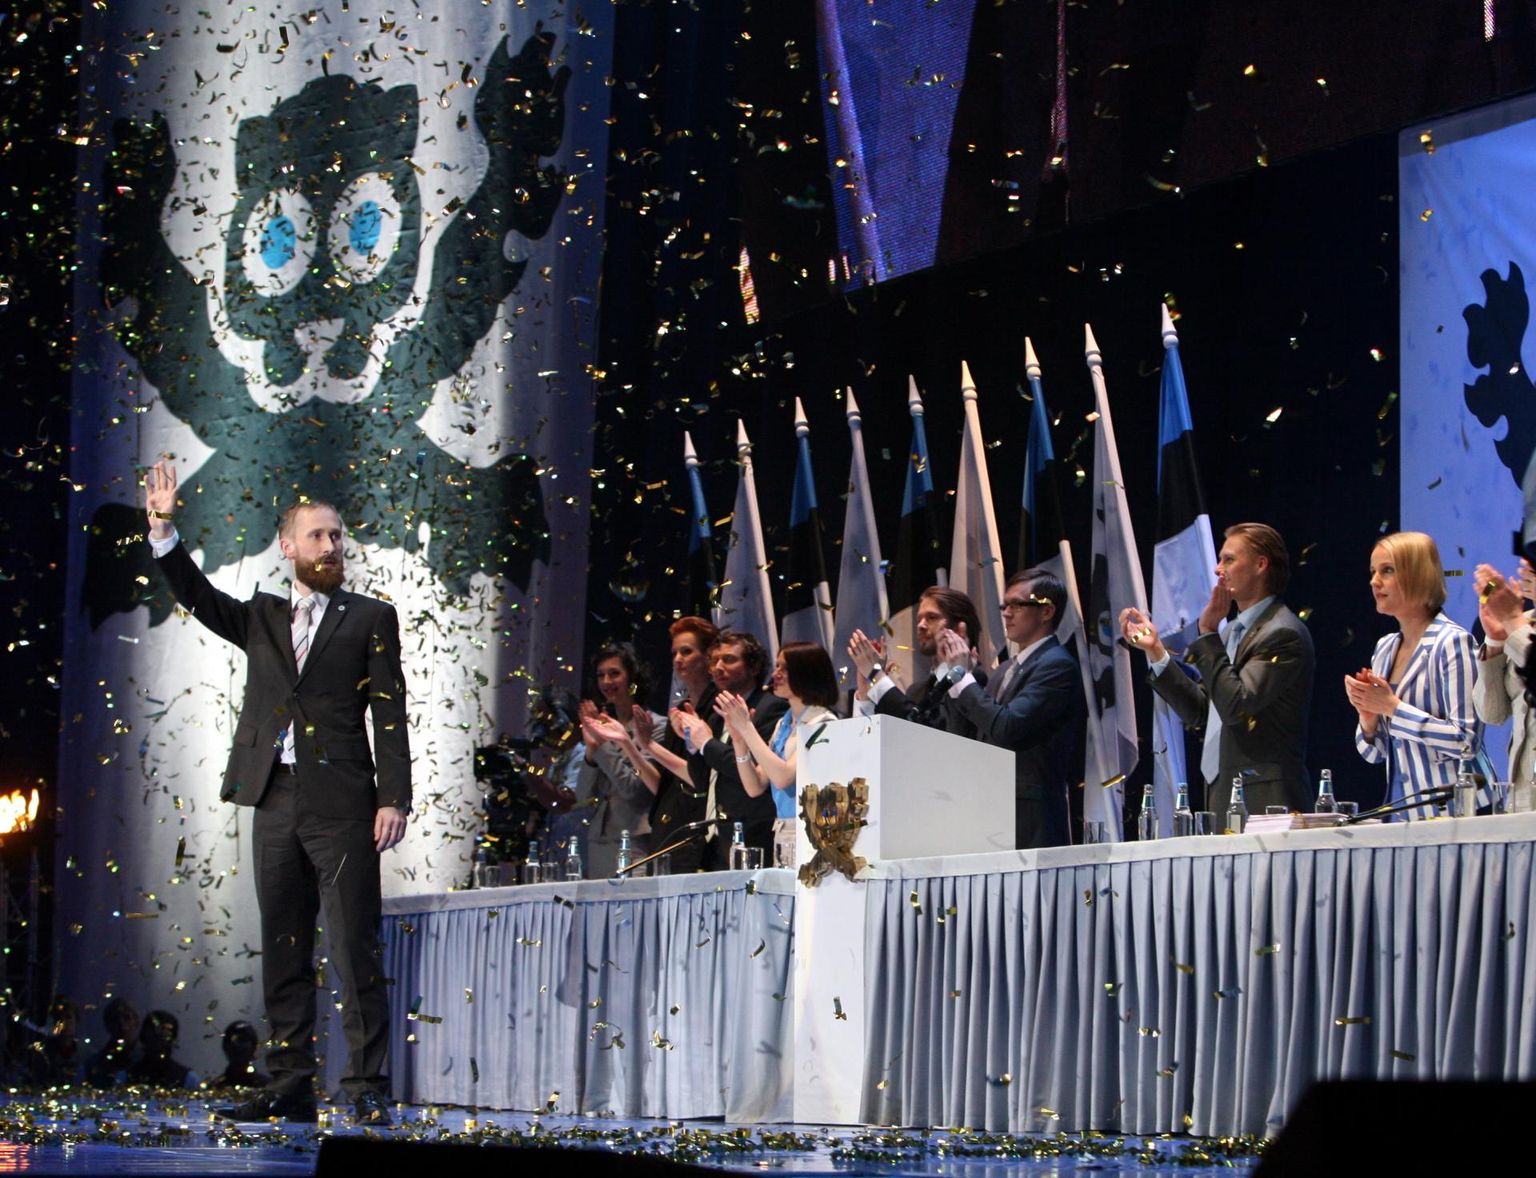 NO99 suurprojekti «Ühtne Eesti» kulminatsiooniks sai 7. mail 2010 toimunud Suurkogu Tallinnas Saku suurhallis. Erakonna loomise asemel tehti sel päeval aga poliitilist teatrit.